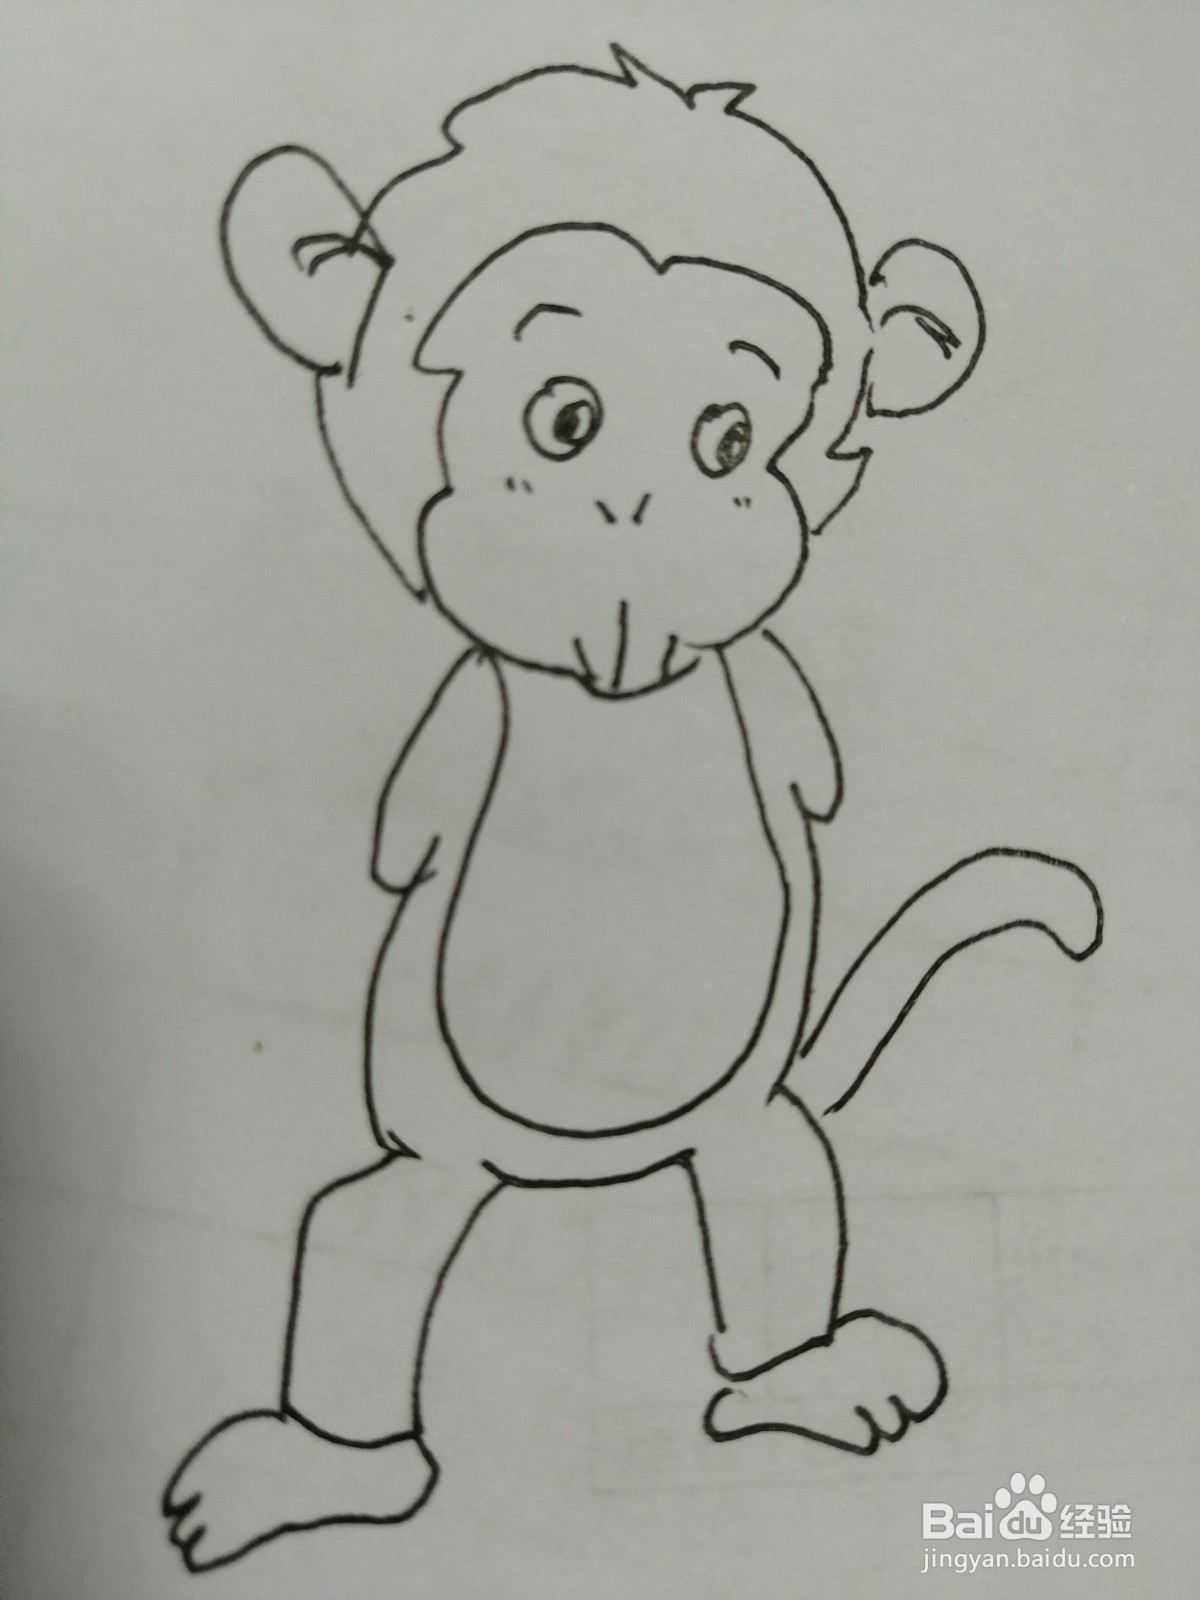 <b>机灵的小猴子怎么画</b>